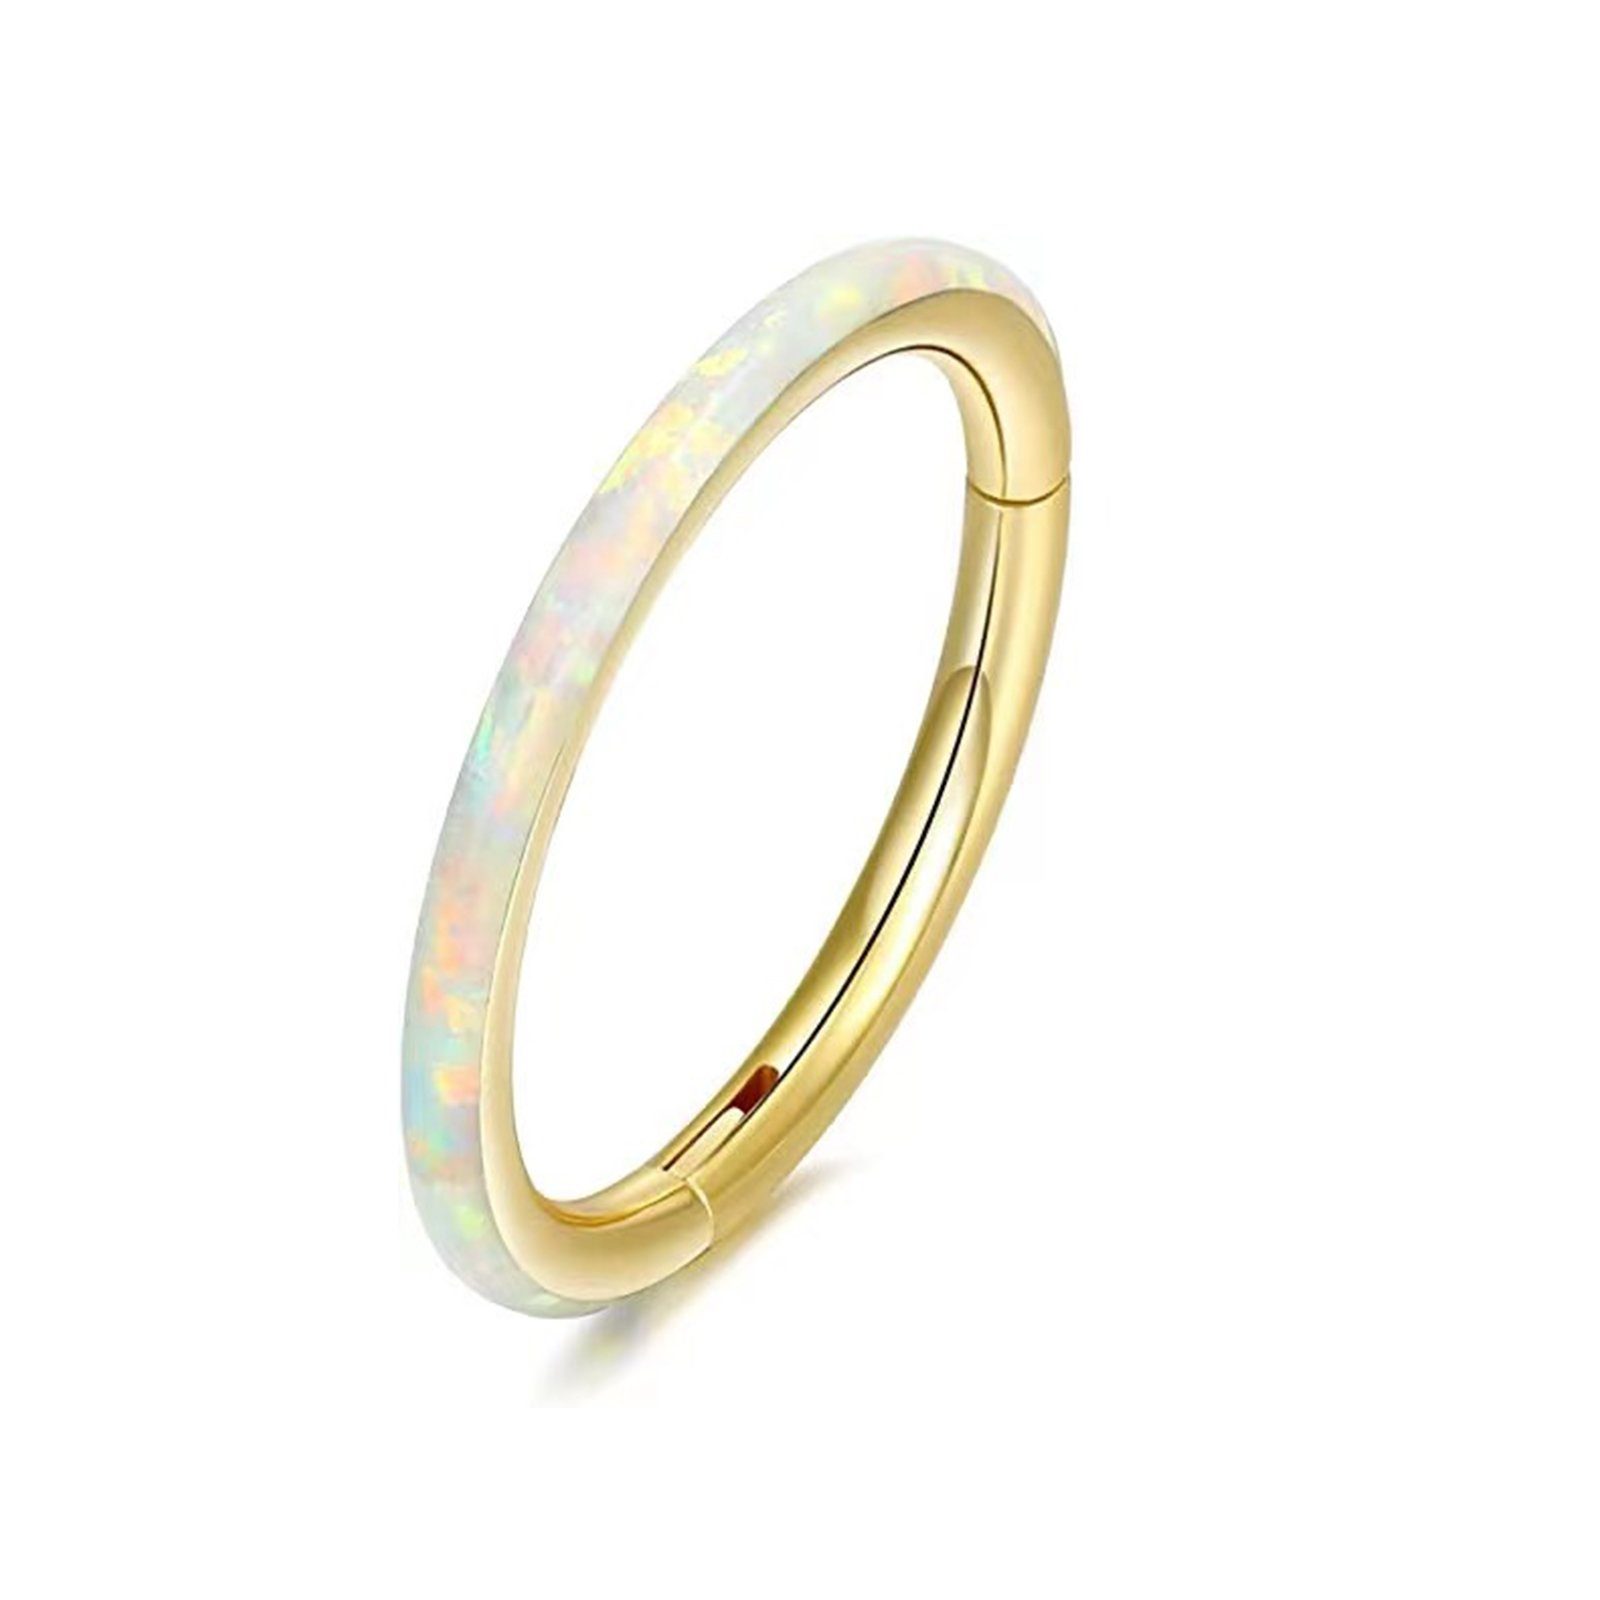 Karisma Nasenpiercing Titan G23 Hinged Segmentring Charnier/Conch Septum Clicker Ring, Stärke 1,2mm-Weiss - (Durchmesser) - 8mm, Opal Weiss Gold | Nasenpiercings